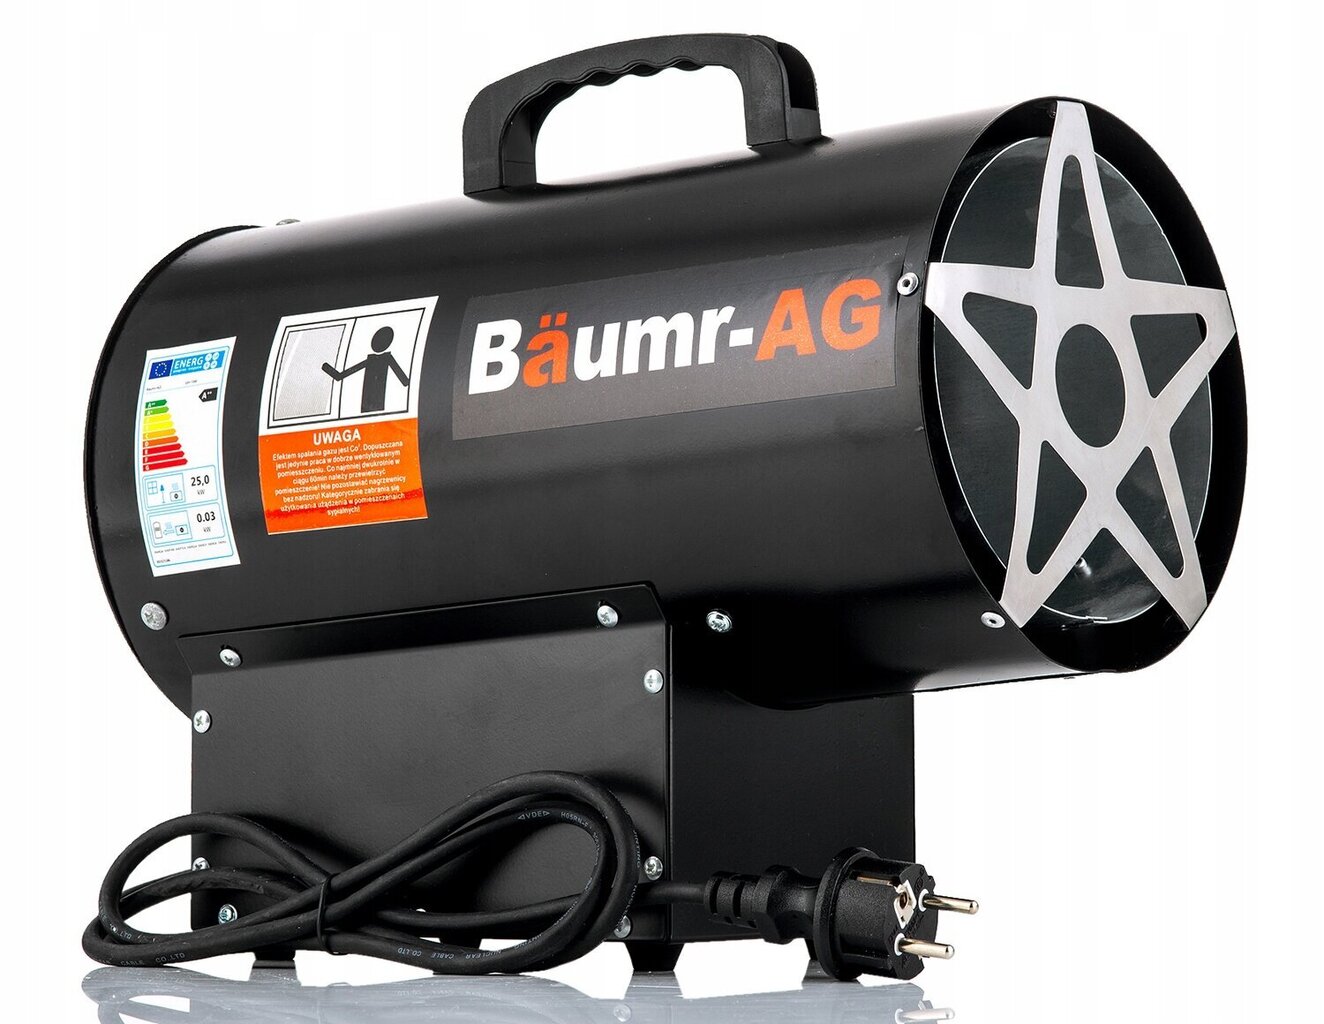 Gāzes sildītājs Baumr-Ag 25 kW цена и информация | Sildītāji | 220.lv